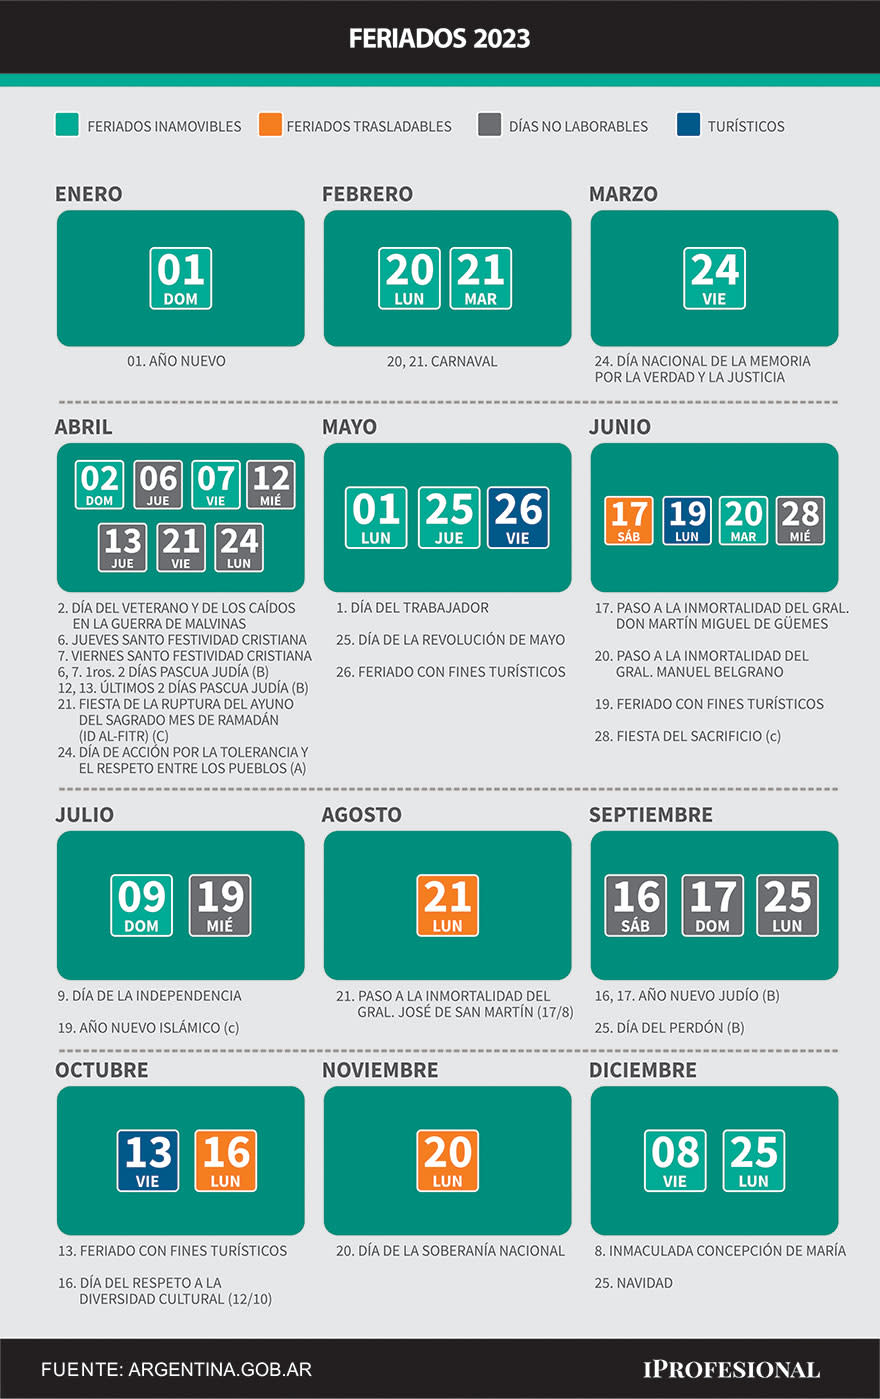 Todos los feriados de 2023 de acuerdo al calendario oficial de Argentina